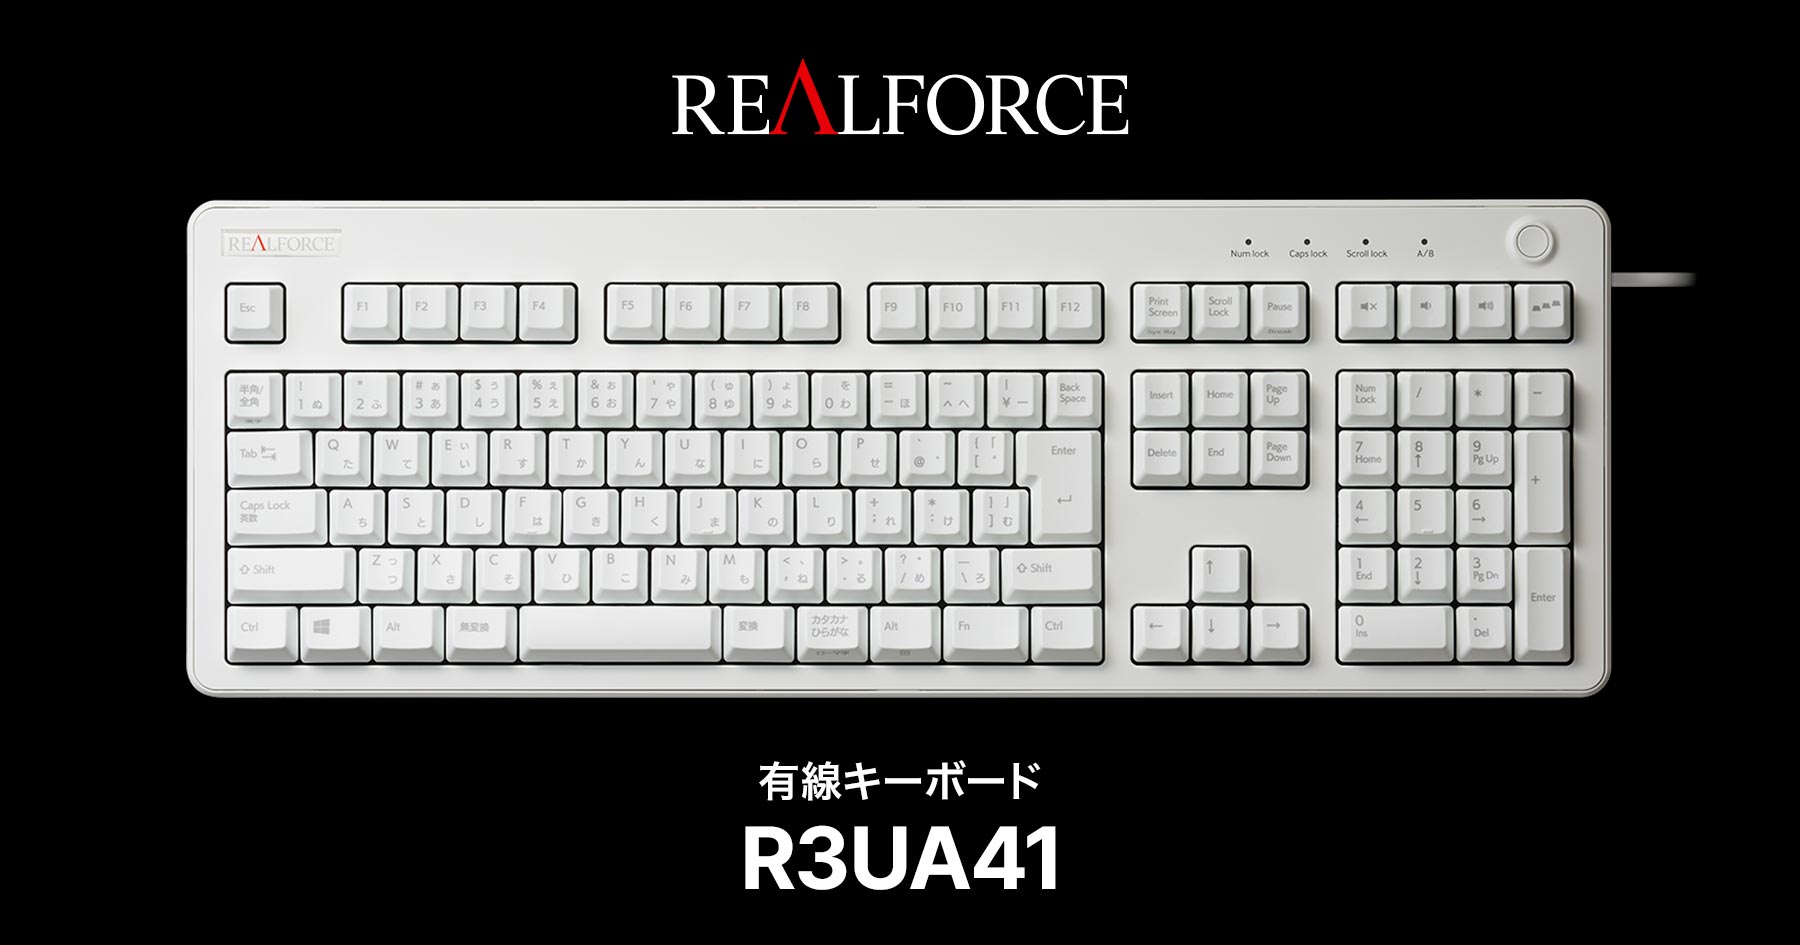 製品 : REALFORCE / R3UA41 | REALFORCE | 日本製プレミアムキーボードの最高峰